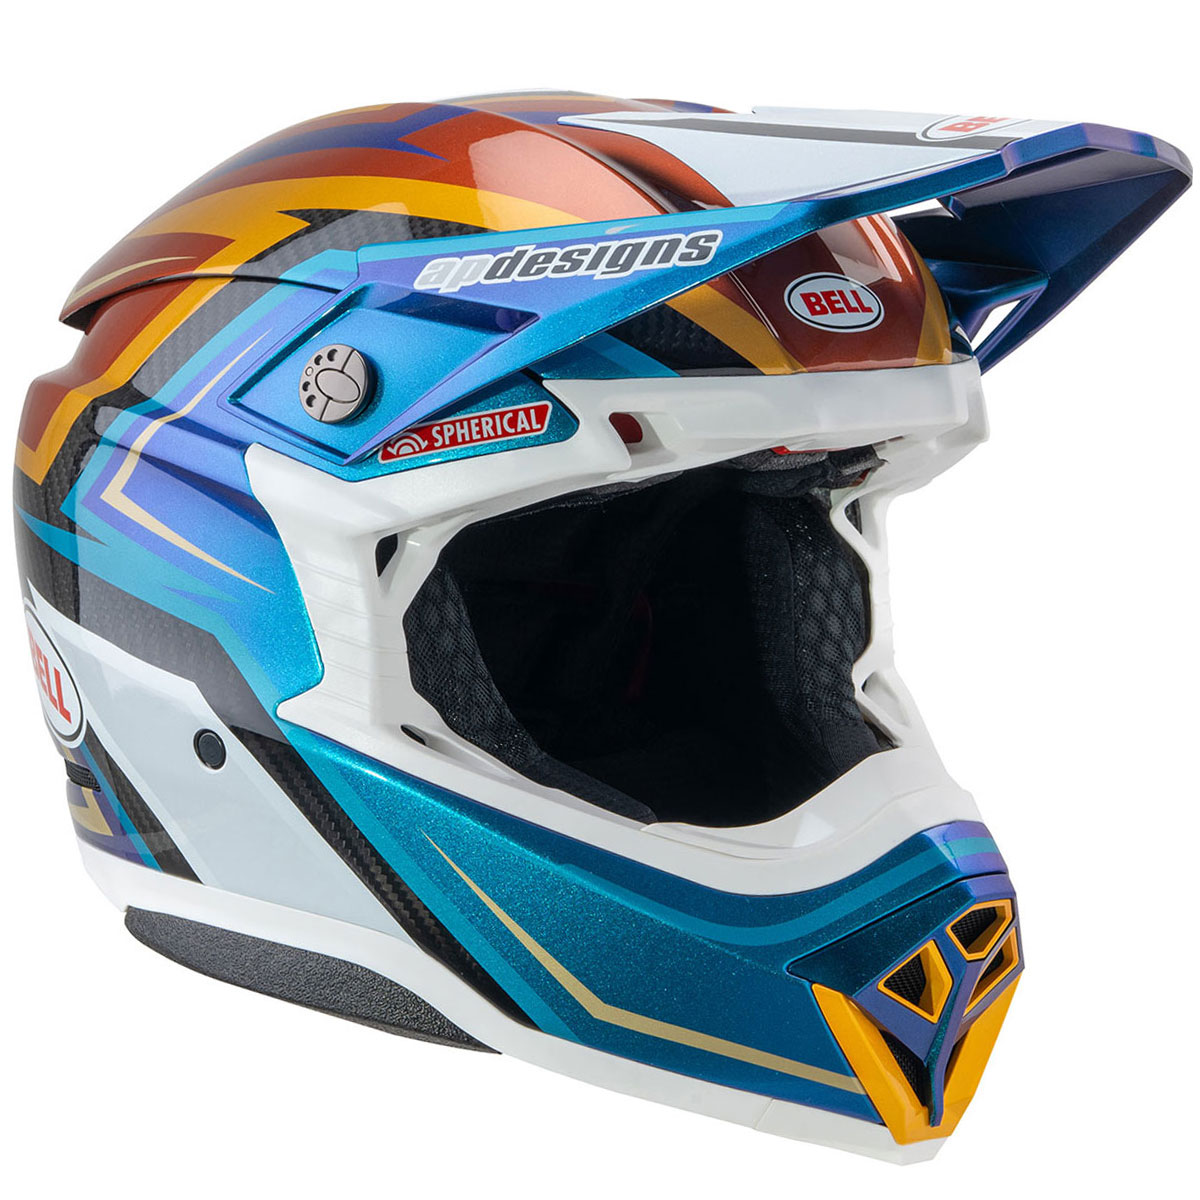 BELL MOTO-10 スフェリカル ヘルメット トマック24 ホワイト/ゴールド